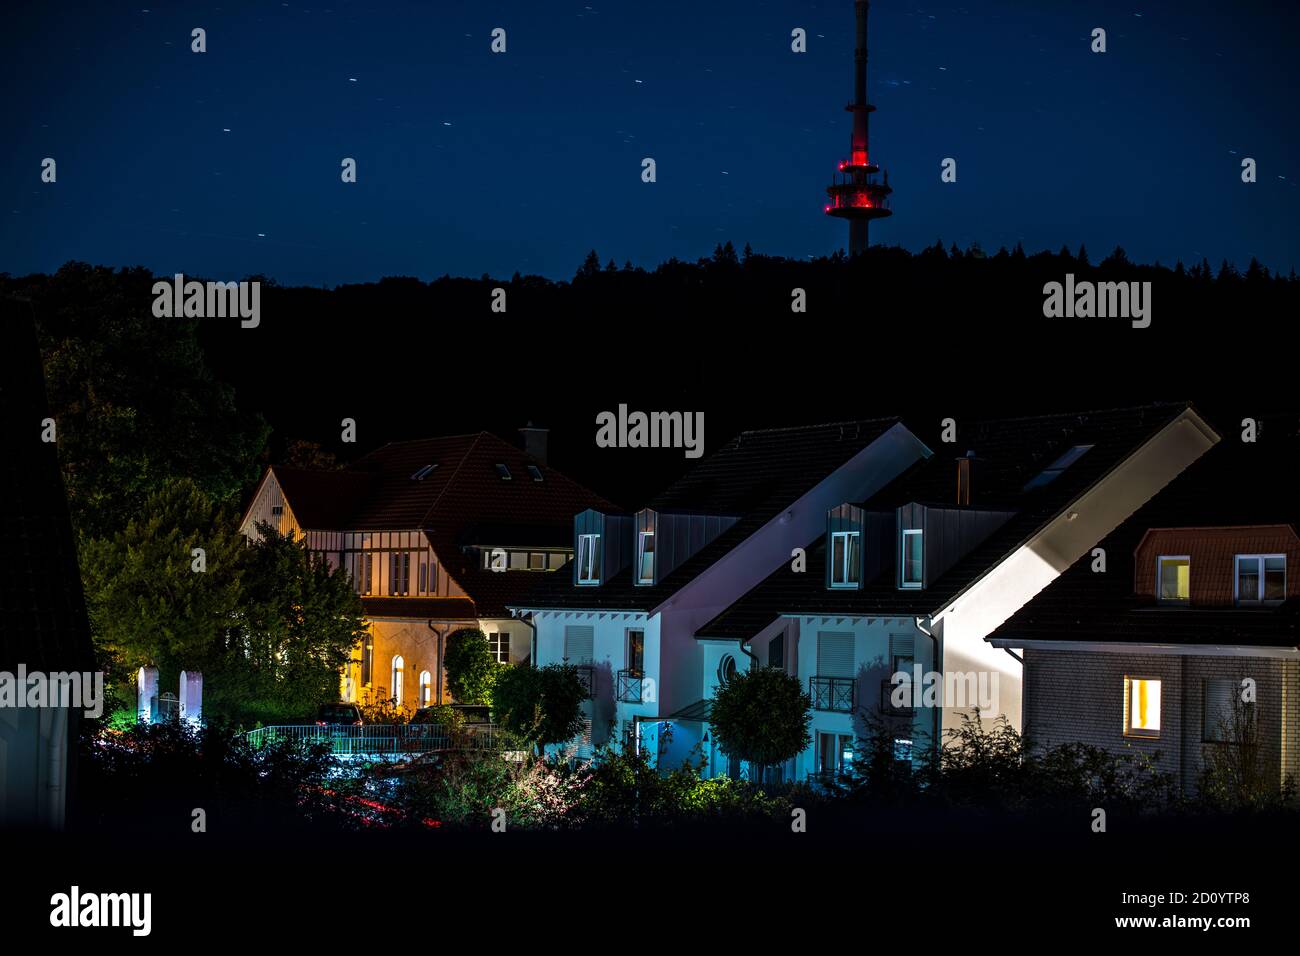 Beleuchtete Häuserreihe eines Wohngebiets bei Nacht, im Hintergrund der Waldhang mit Fernsehturm Stock Photo